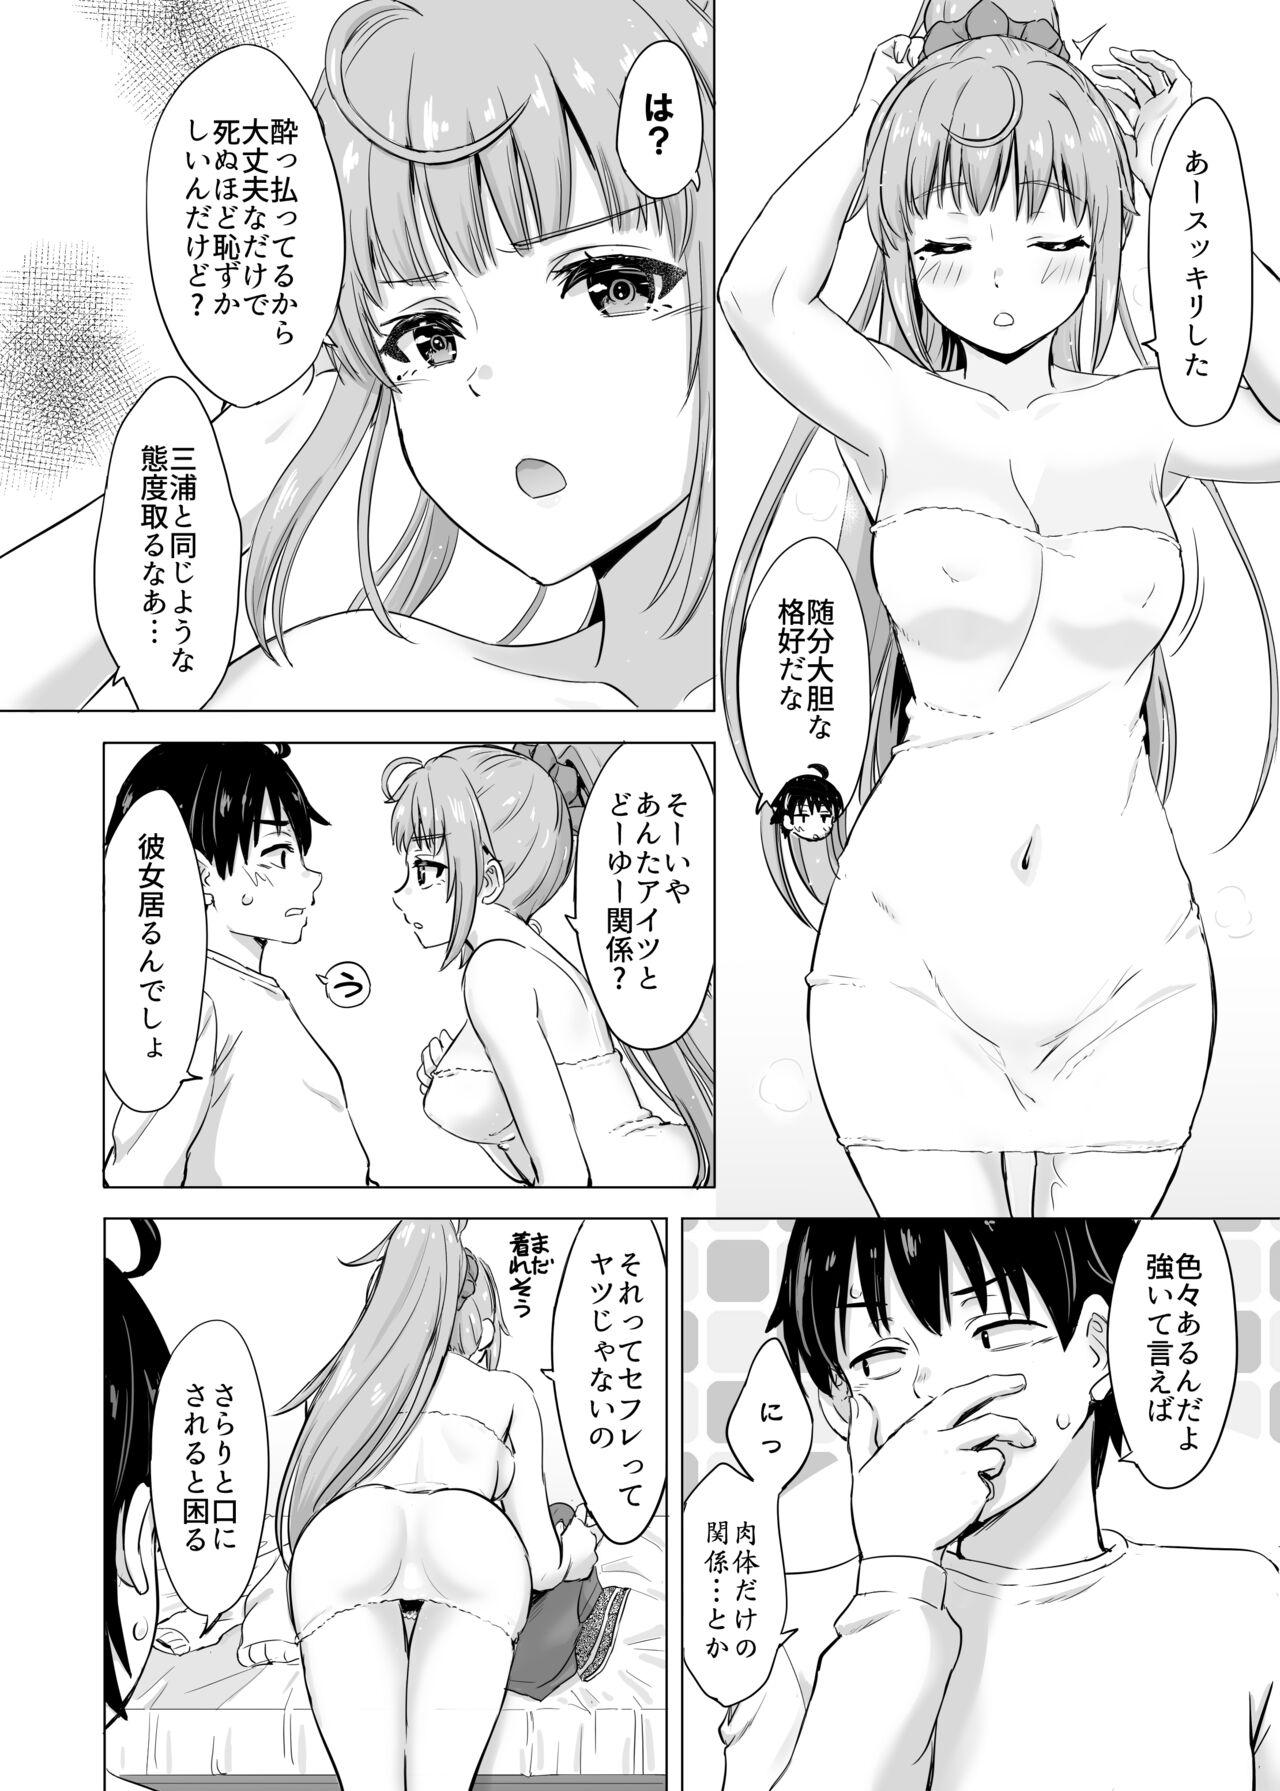 Blow Job Movies Ashi-san Saki Saki Manga - Yahari ore no seishun love come wa machigatteiru Tight - Page 7